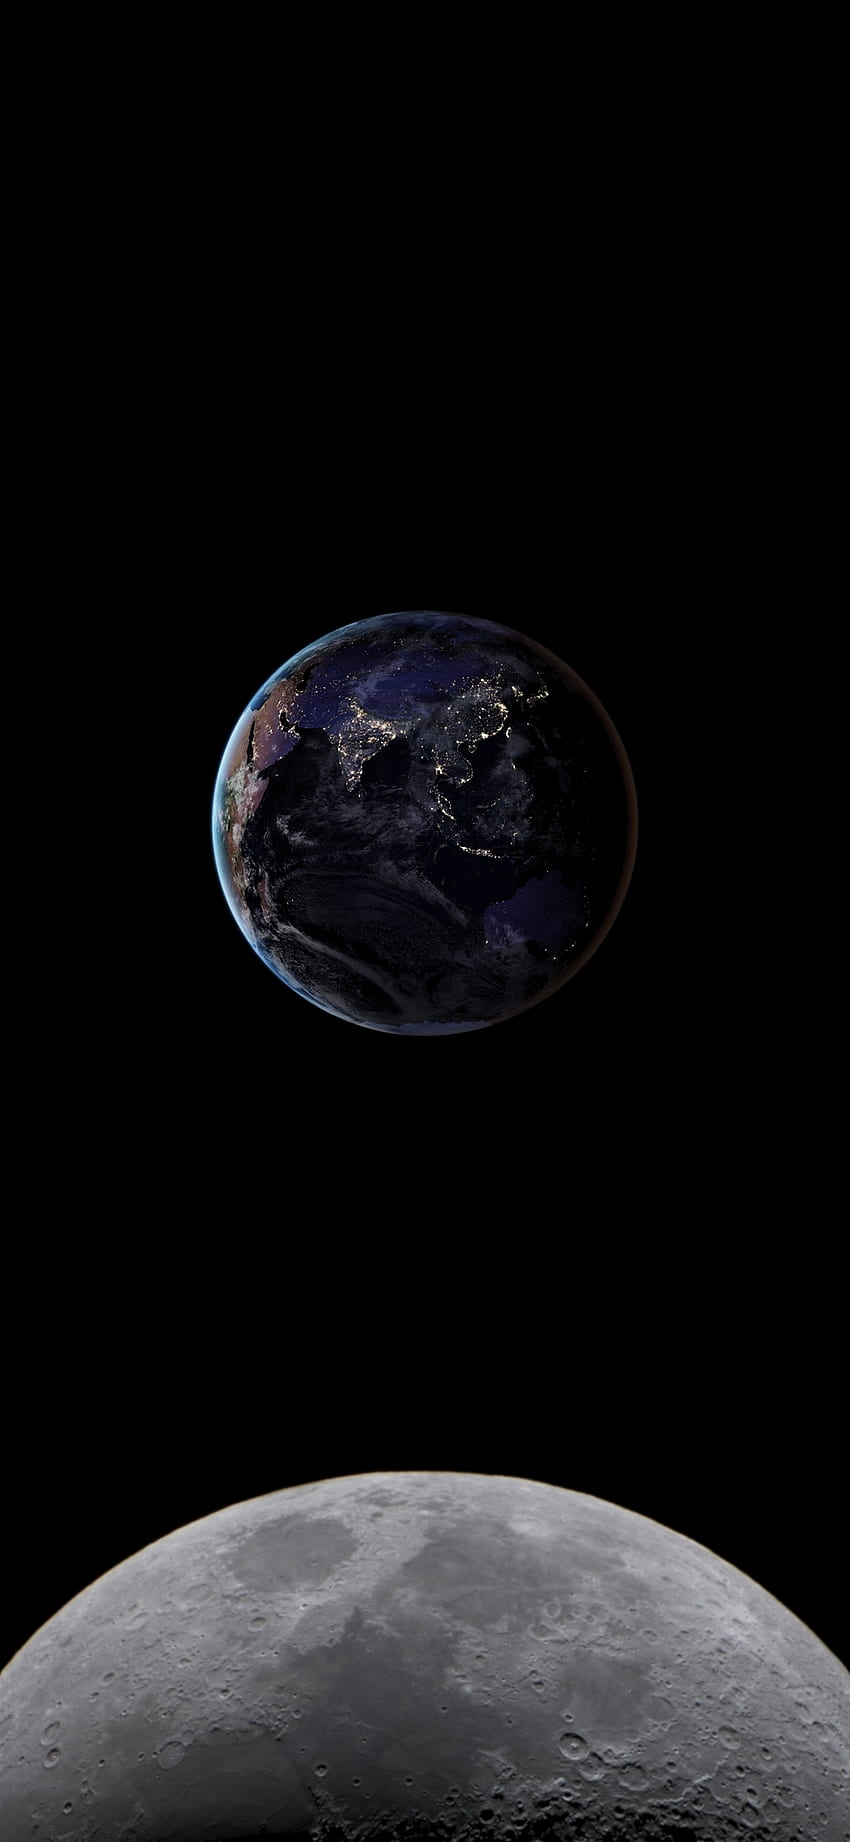 Khám phá vẻ đẹp độc đáo của Trái Đất từ Mặt Trăng qua ứng dụng Oppo A5 Android. Điện thoại Oppo A5 với màn hình HD AMOLED sắc nét sẽ đưa bạn đến những hình ảnh tuyệt vời nhất về hành tinh xinh đẹp của chúng ta. Hãy cùng tận hưởng hành trình khám phá không gian đầy kỳ diệu!